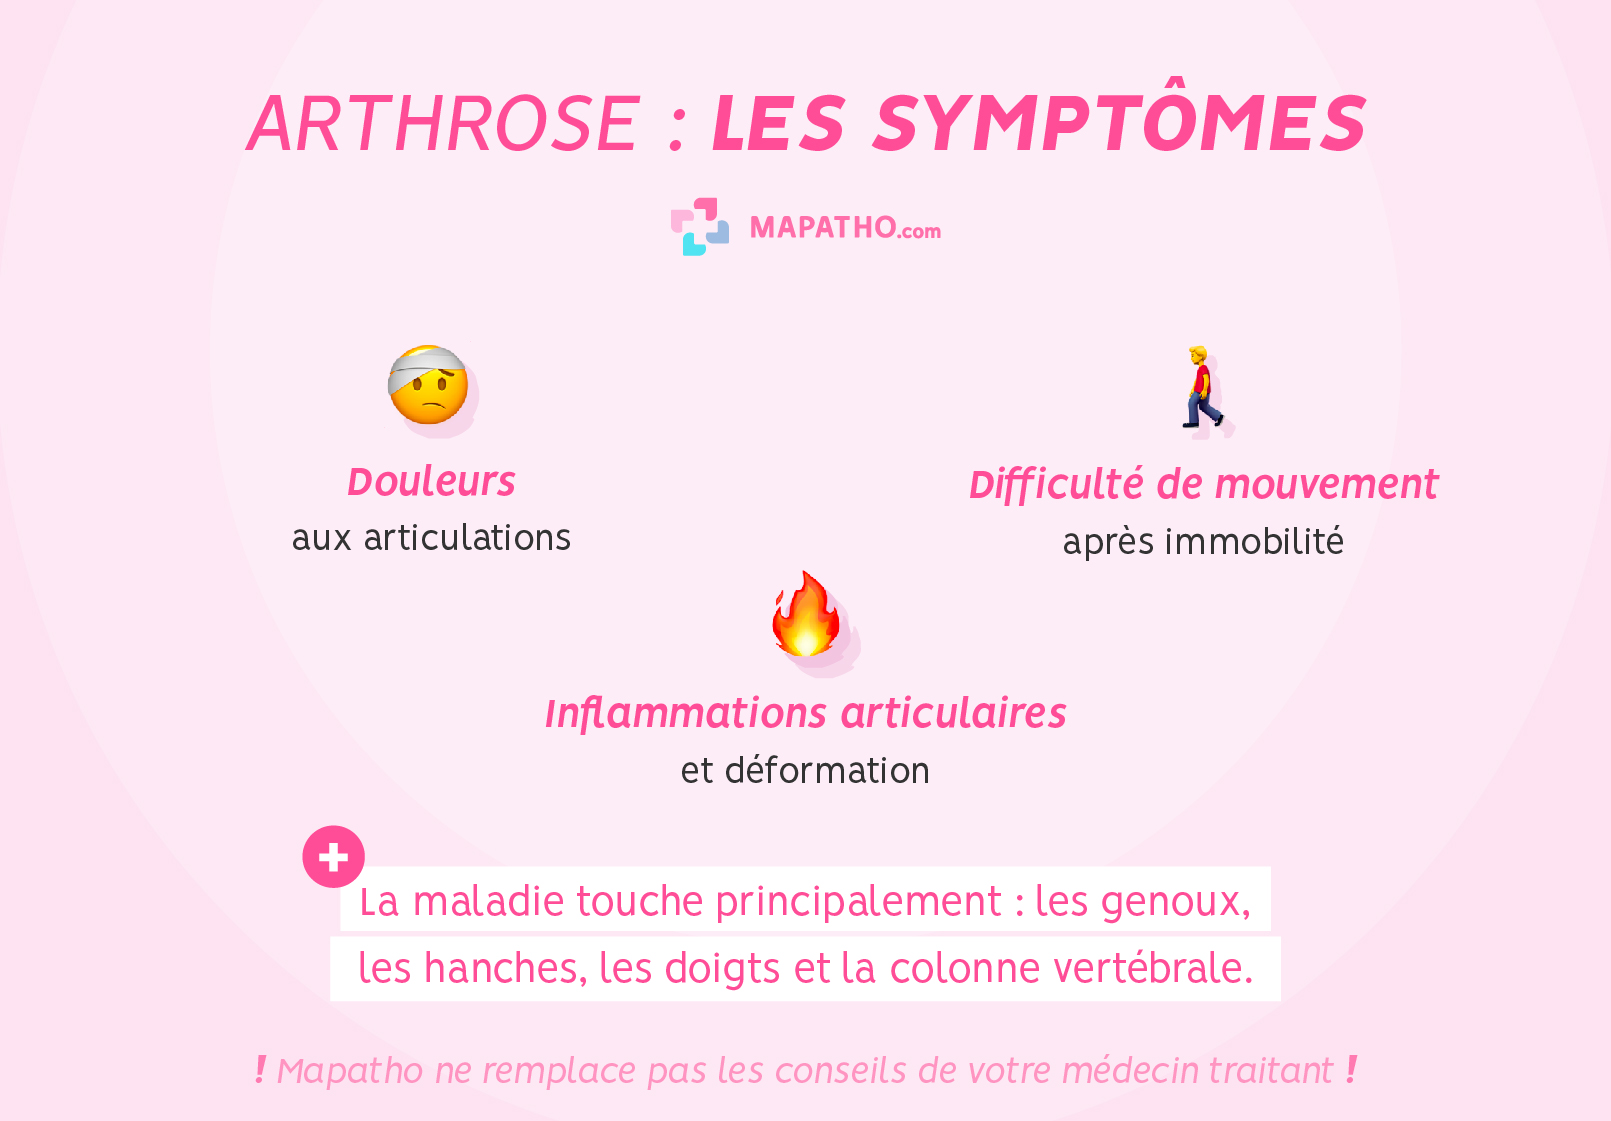 Les symptômes de l'arthrose